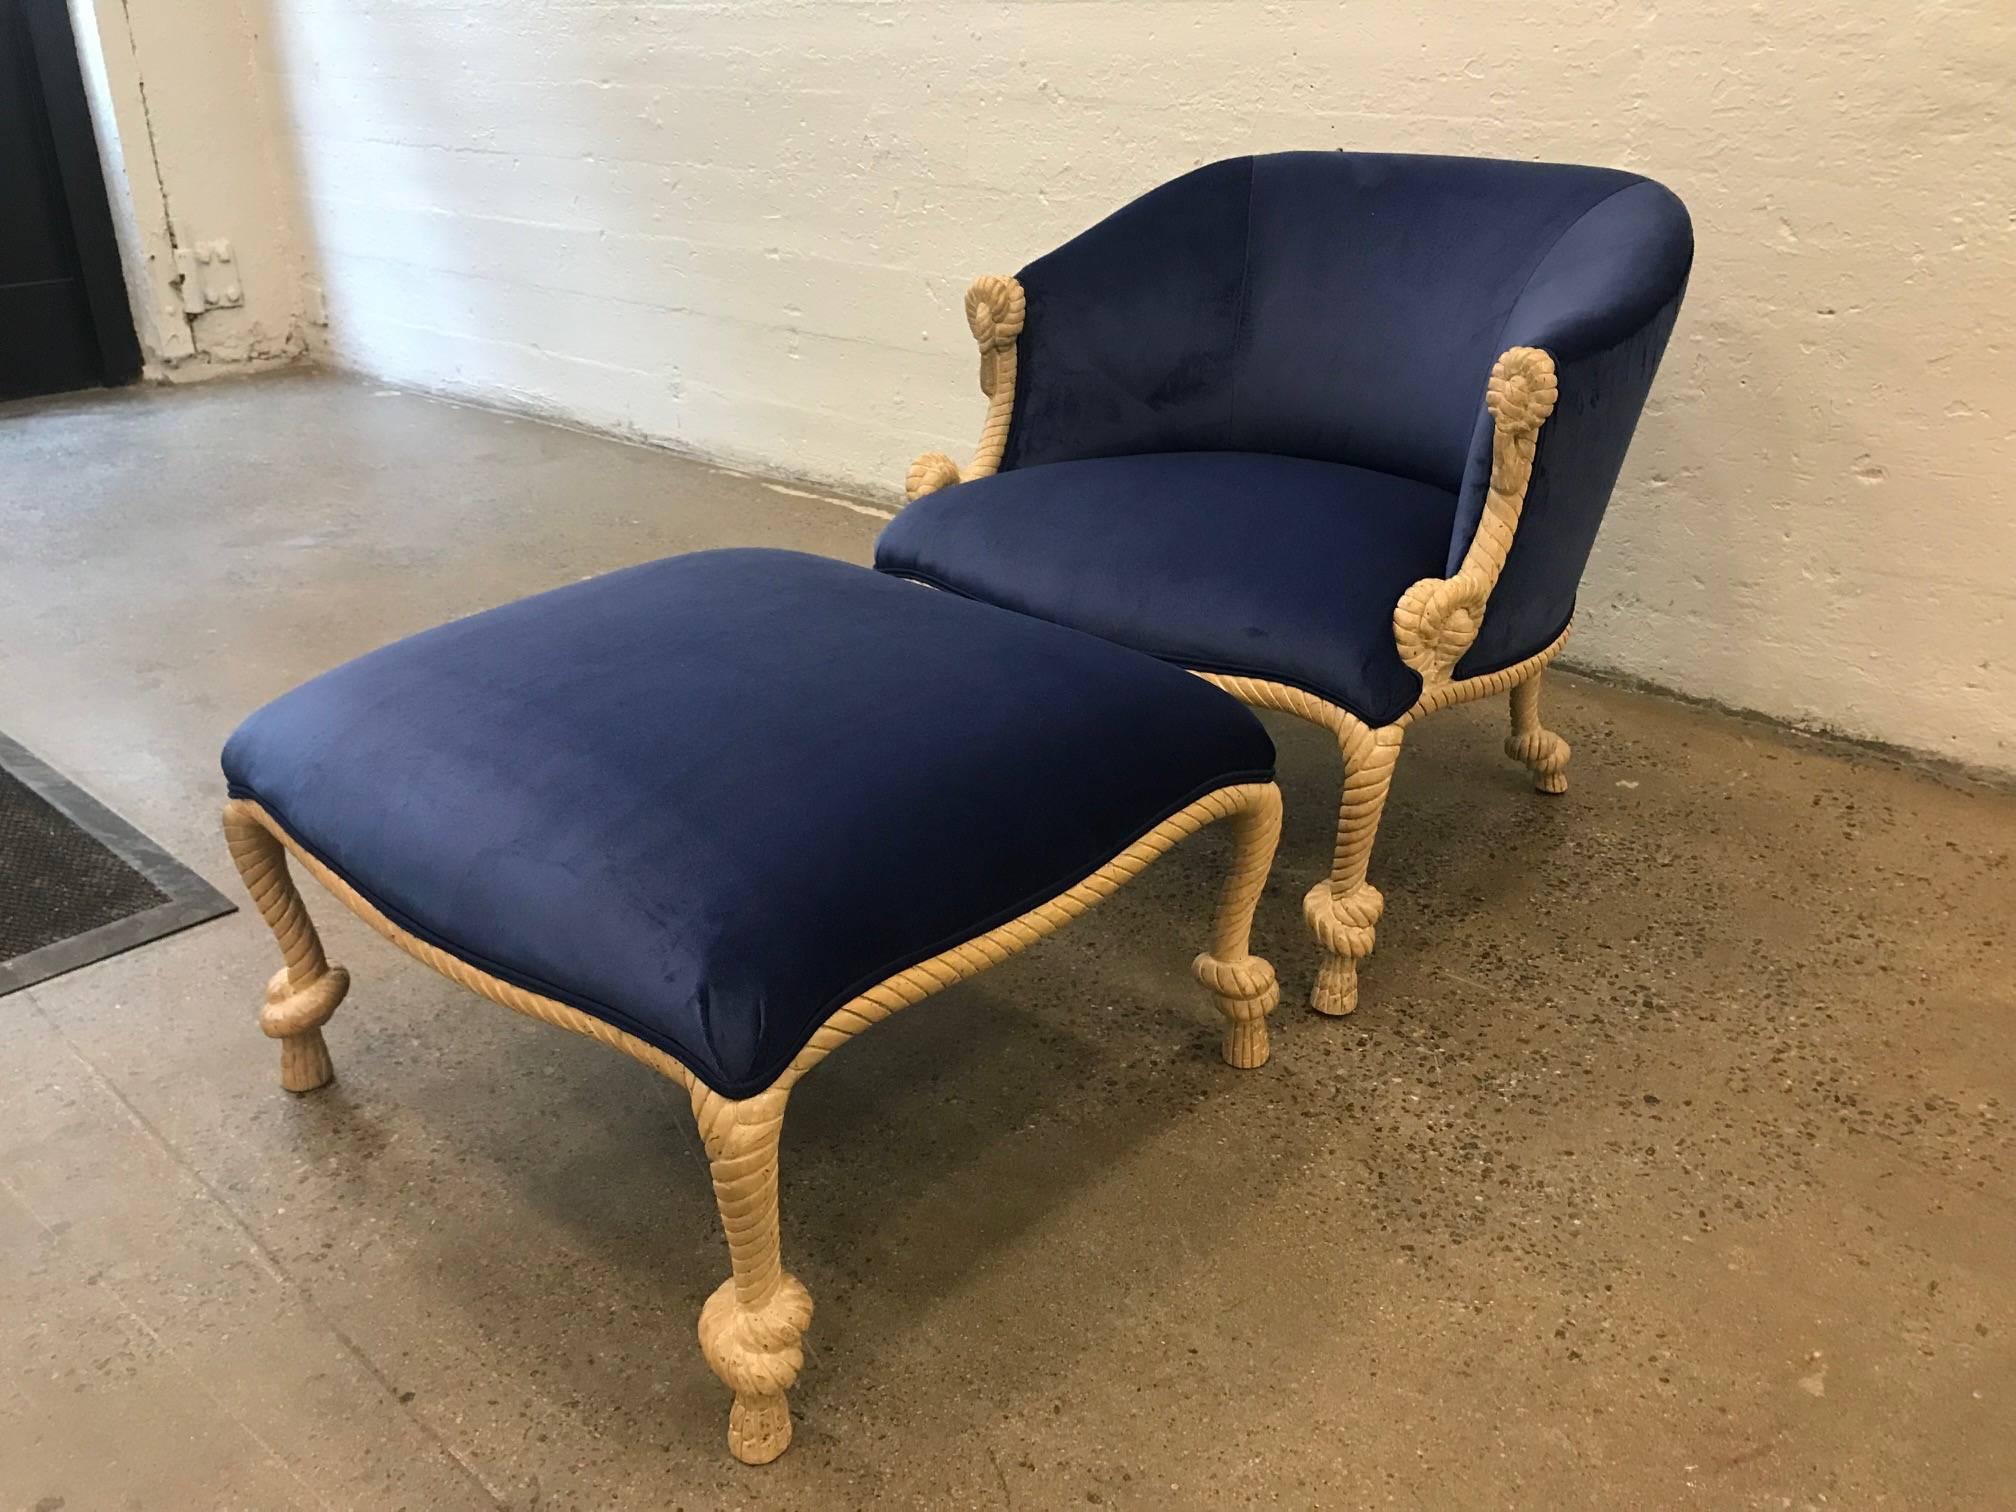 Chaise en corde et pompons avec ottoman assorti en velours bleu. La chaise a un cadre de style corde en bois sculpté avec une belle tapisserie en velours, récemment rembourrée.
La chaise mesure : 27.5 L x 28 P x 26,5 H
L'ottoman mesure : 25.5 L x